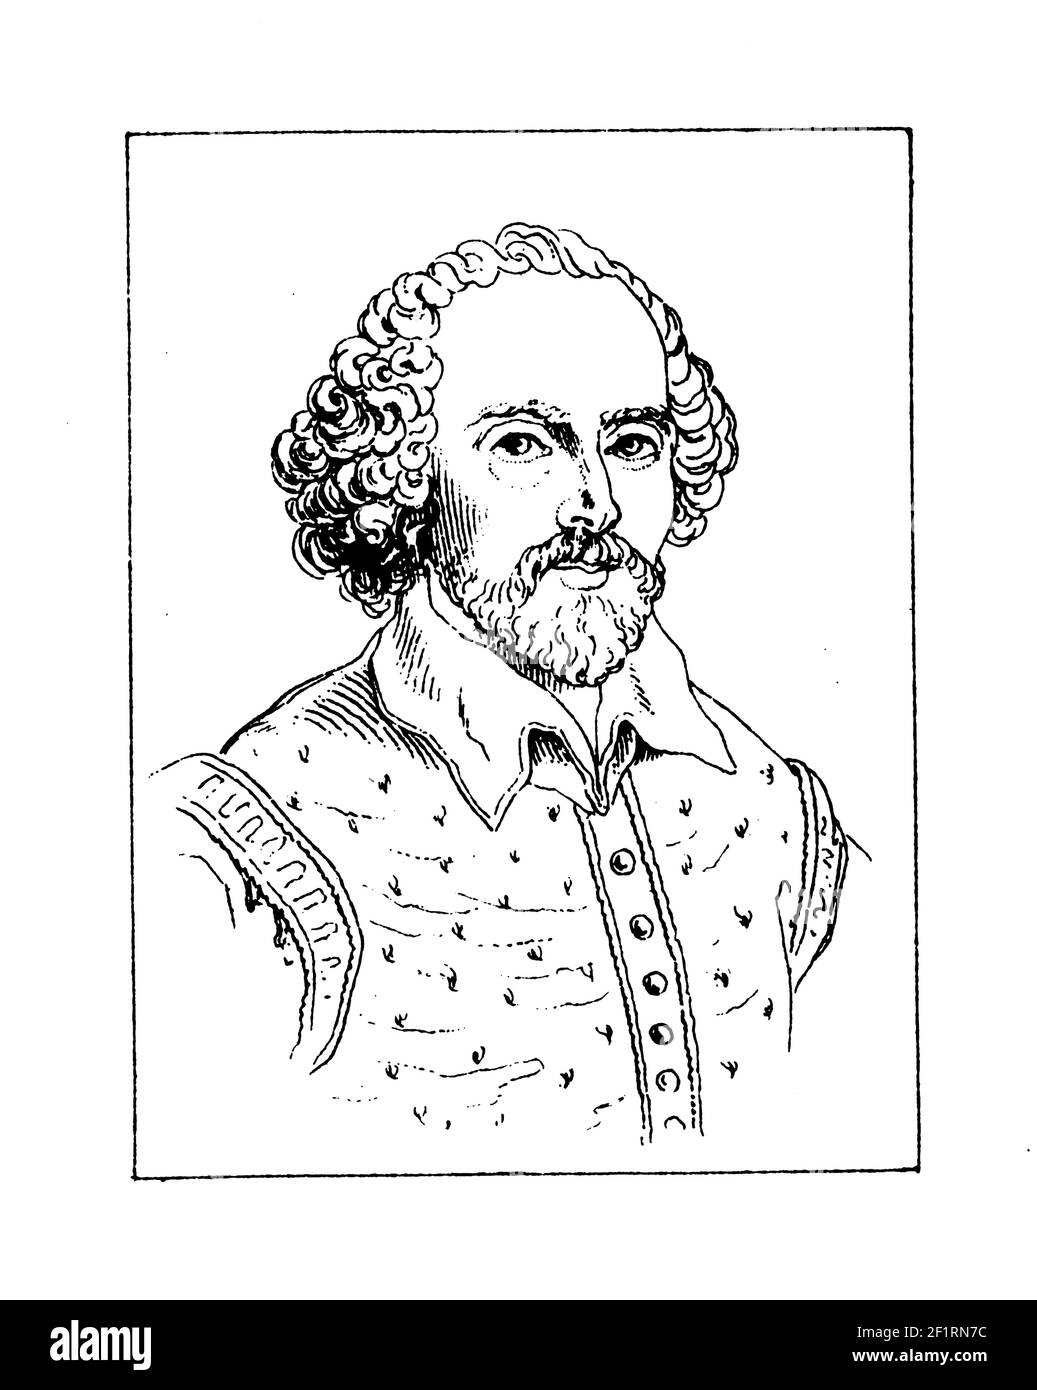 Incisione vintage di un ritratto di William Shakespeare, poeta e drammaturgo inglese. È nato il 26 aprile 1564 a Stratford-upon-Avon, Warwickshir Foto Stock